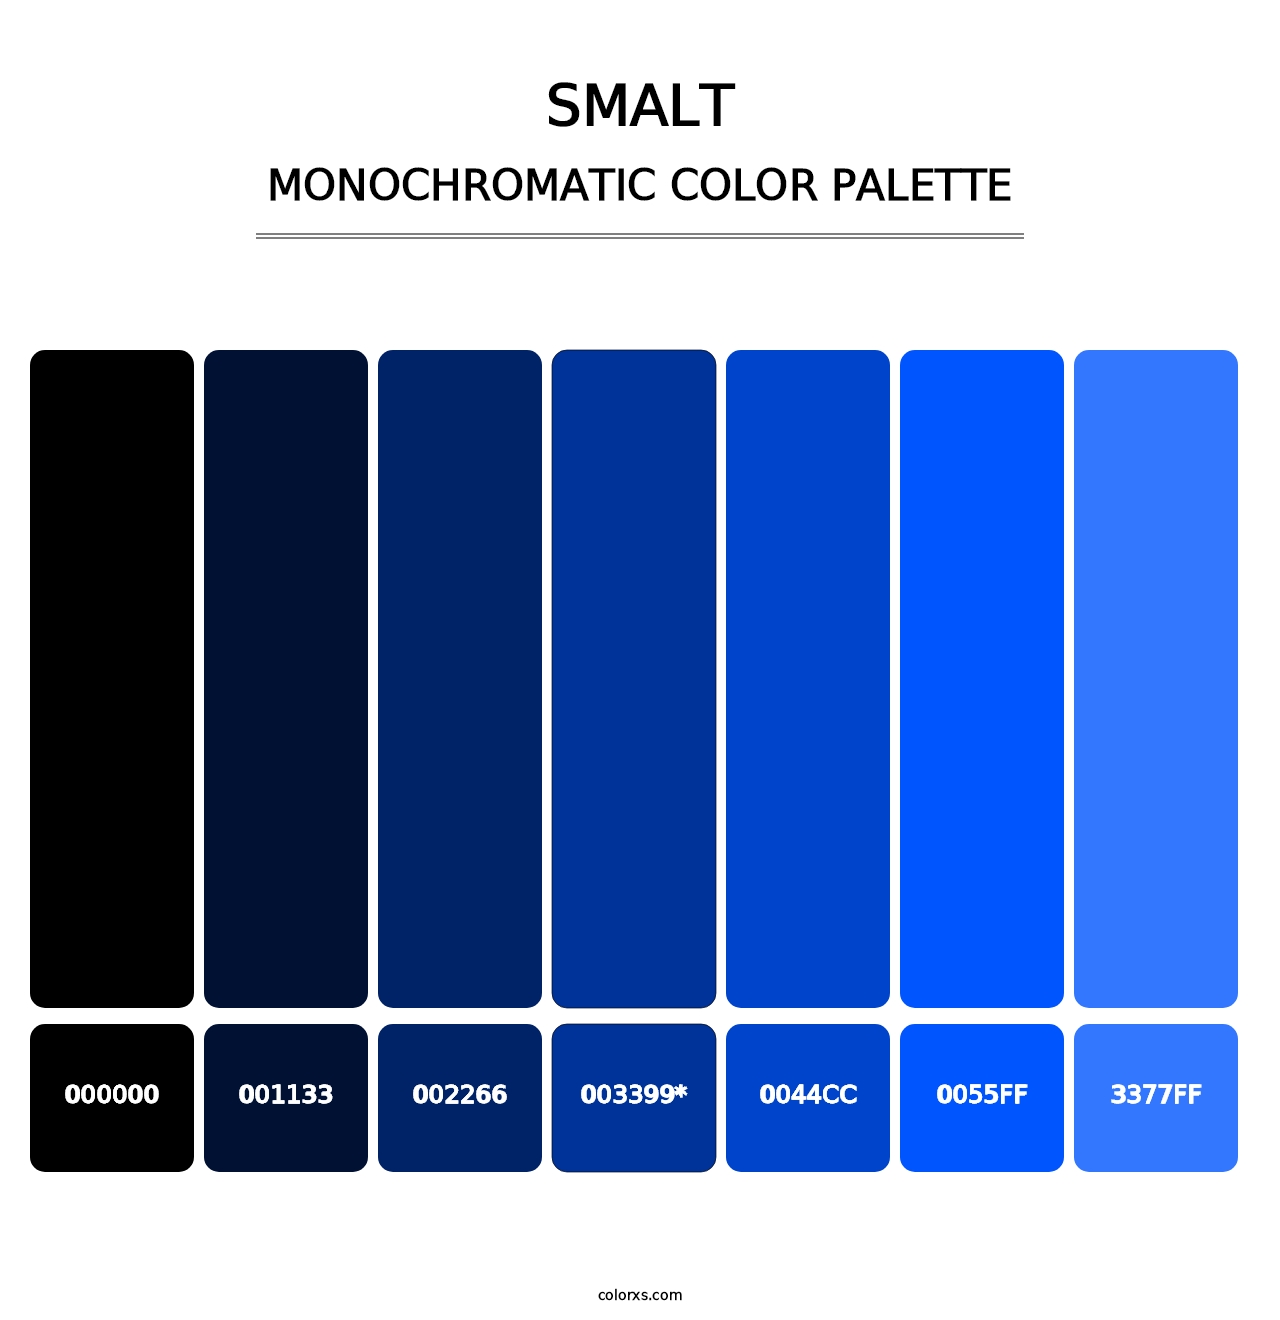 Smalt - Monochromatic Color Palette